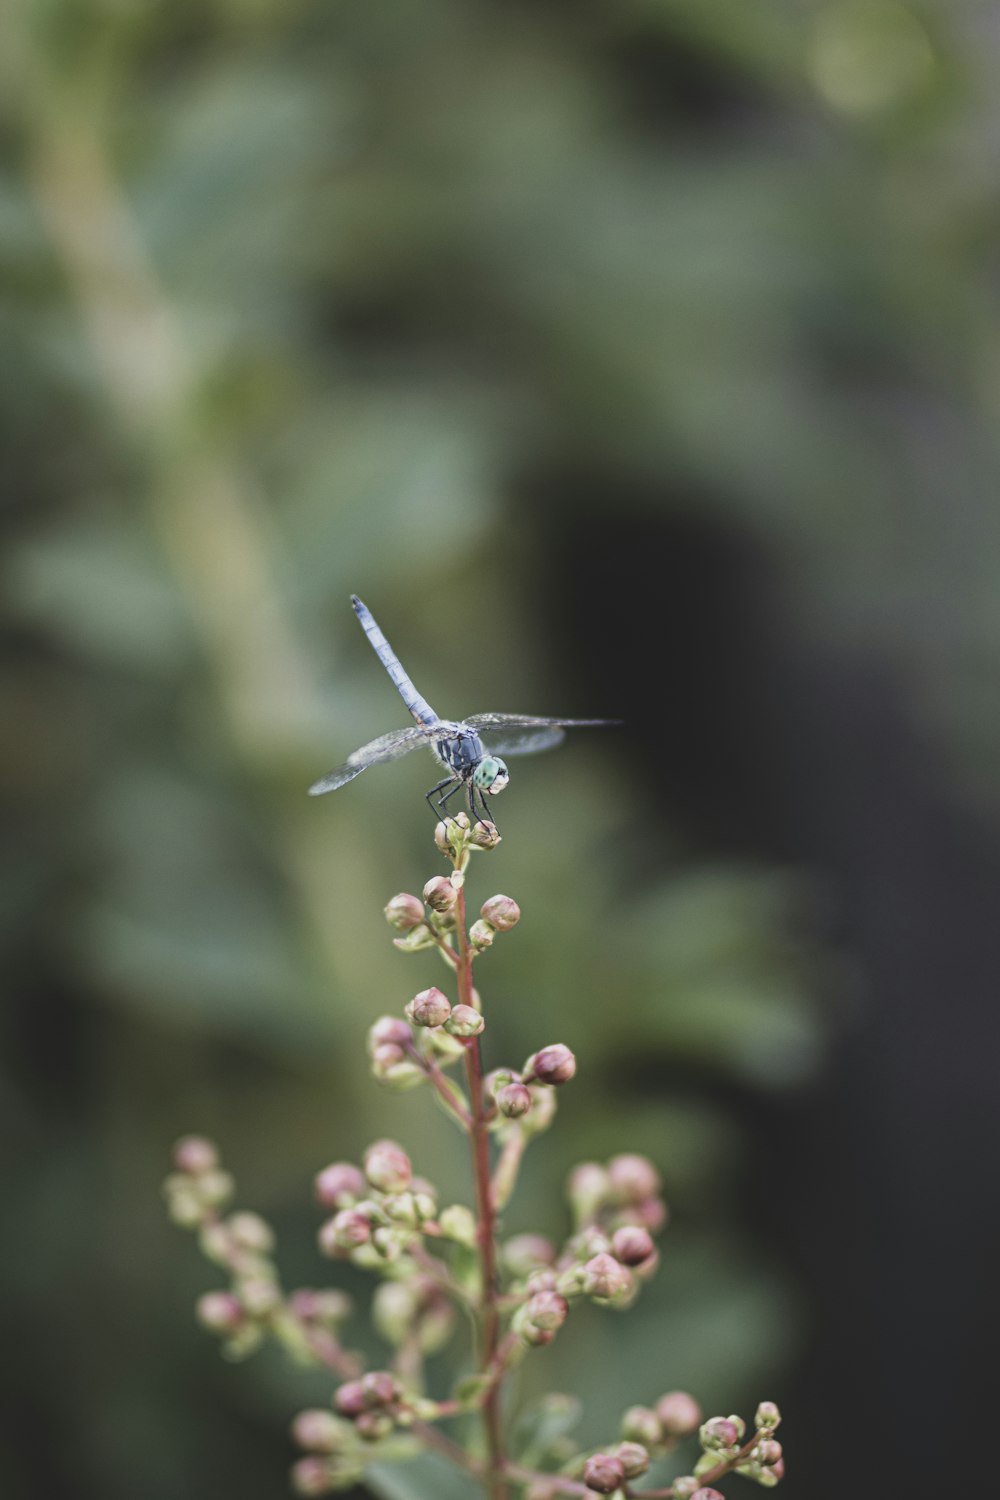 libélula azul y blanca posada en capullos de flores rosadas en lente de cambio de inclinación